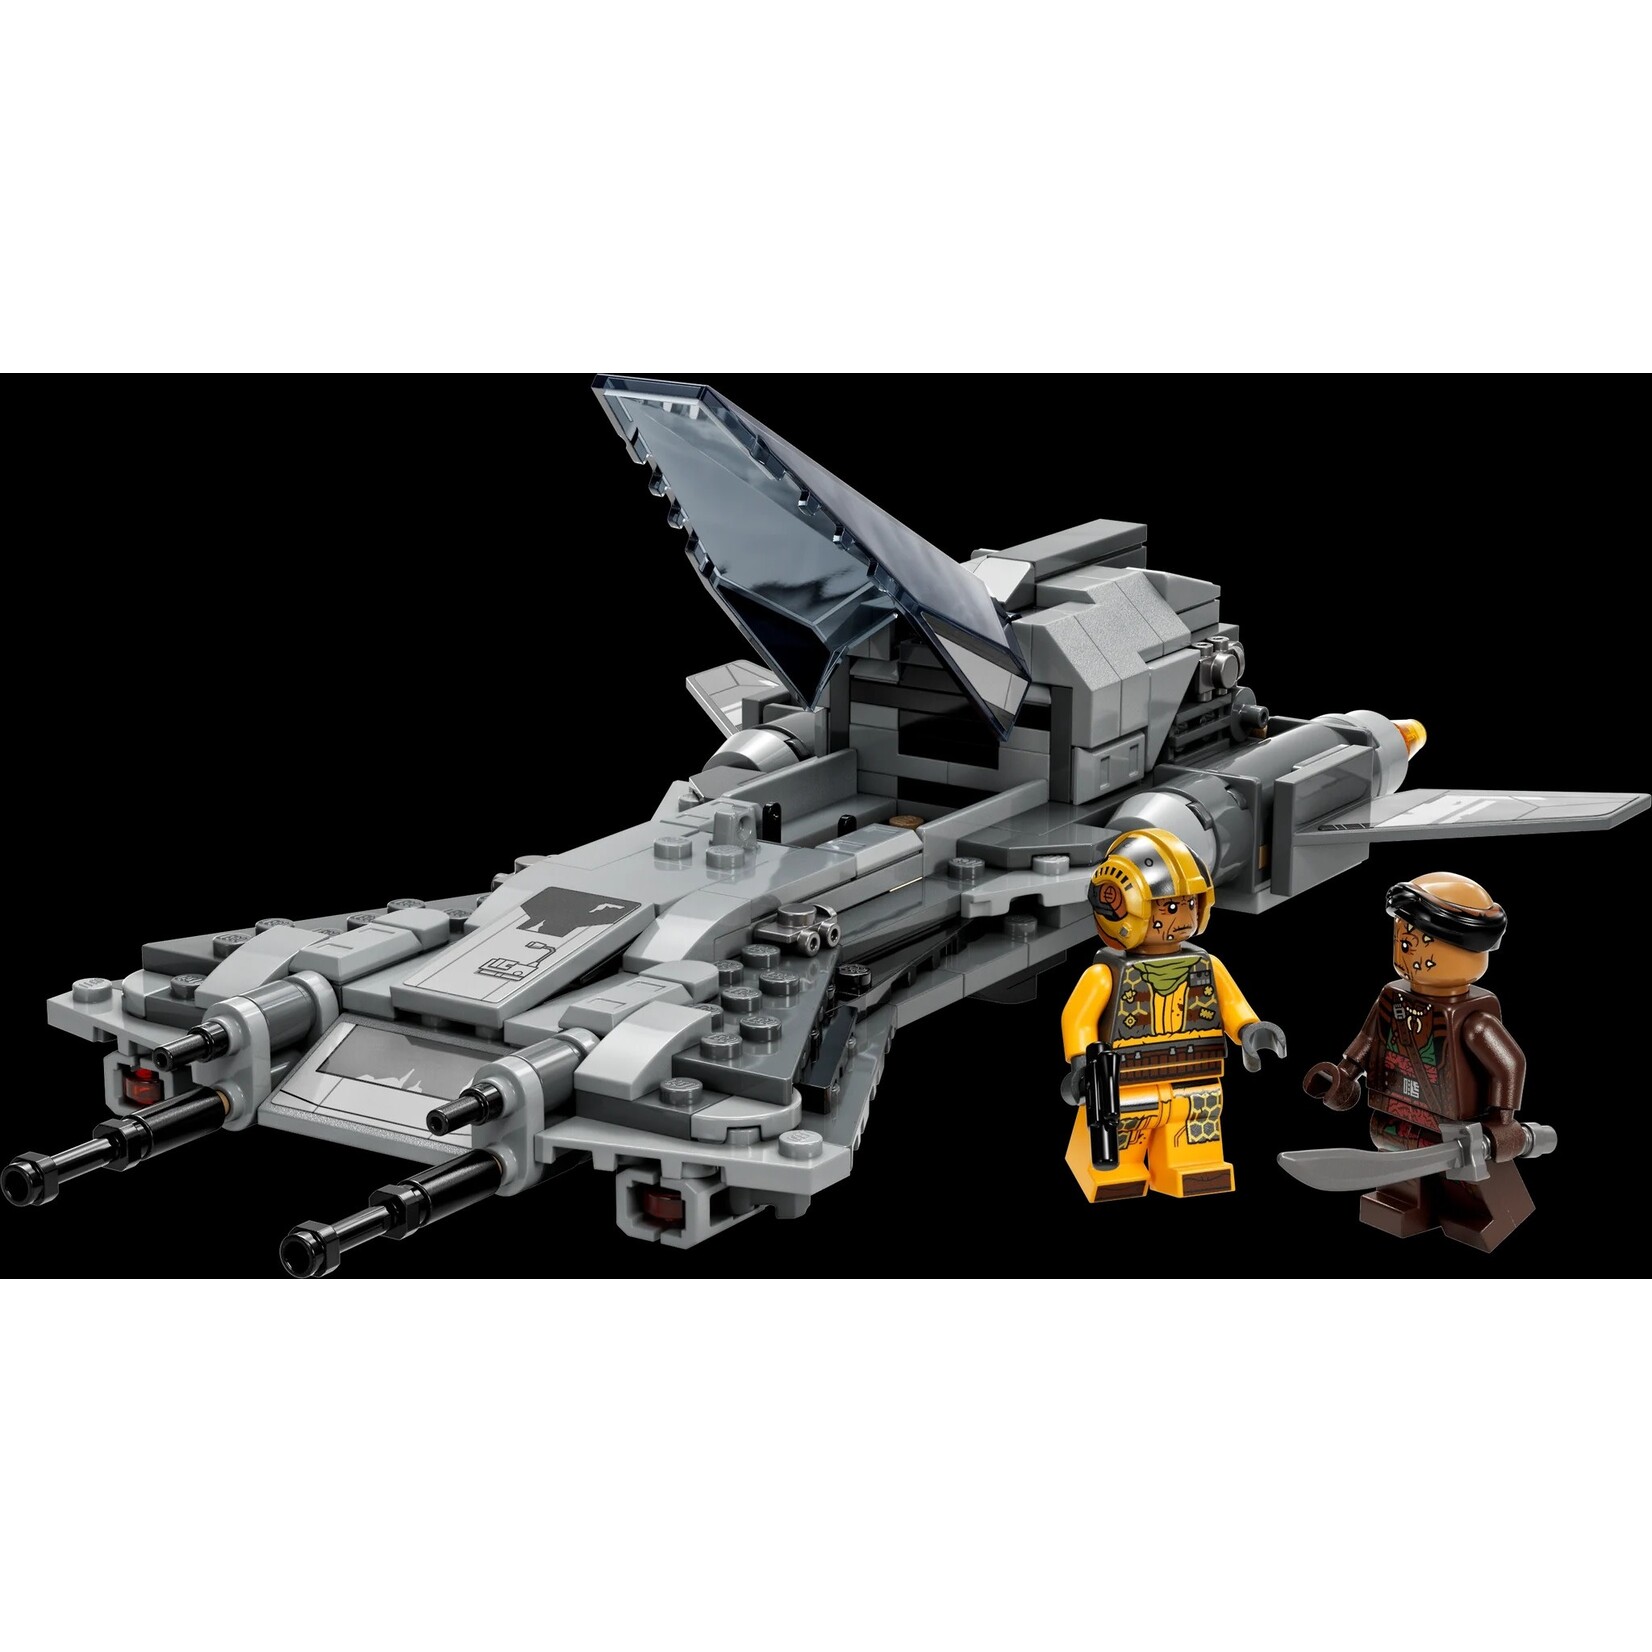 LEGO LEGO Star Wars Pirate Snub Fighter 75346